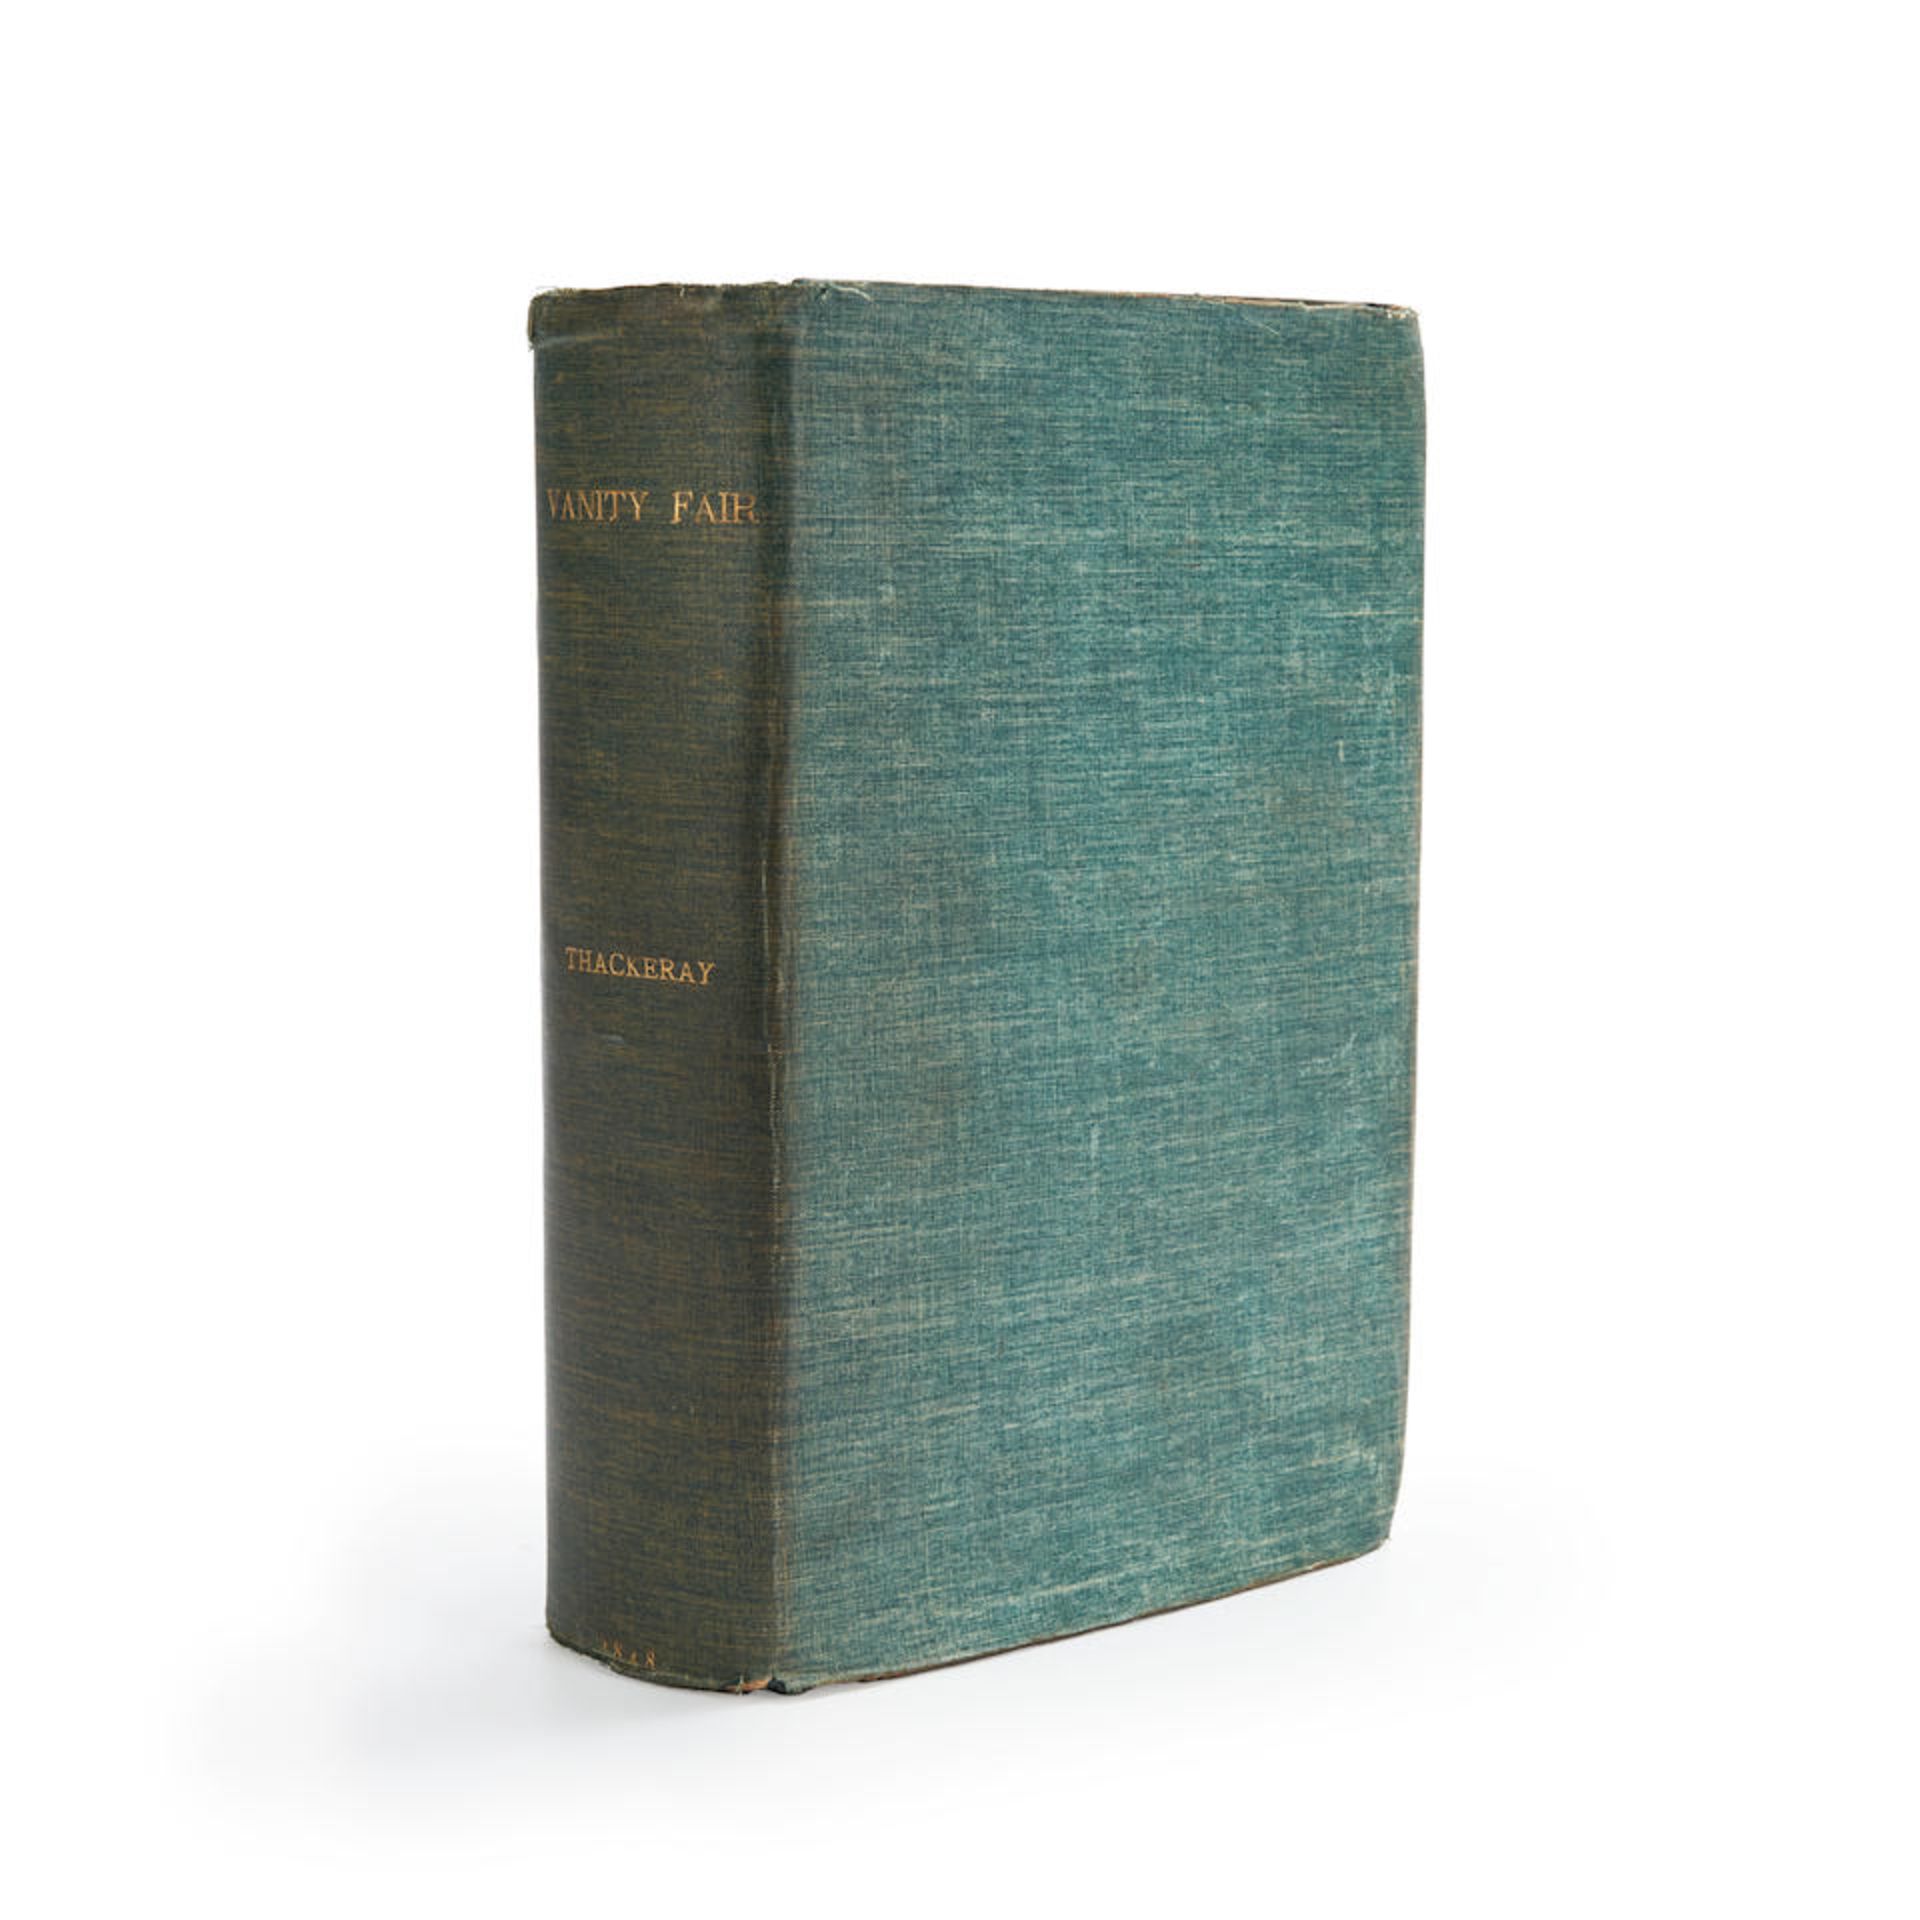 THACKERAY, WILLIAM MAKEPEACE. 1811-1863. Vanity Fair: A Novel Without a Hero. London: Bradbury &...